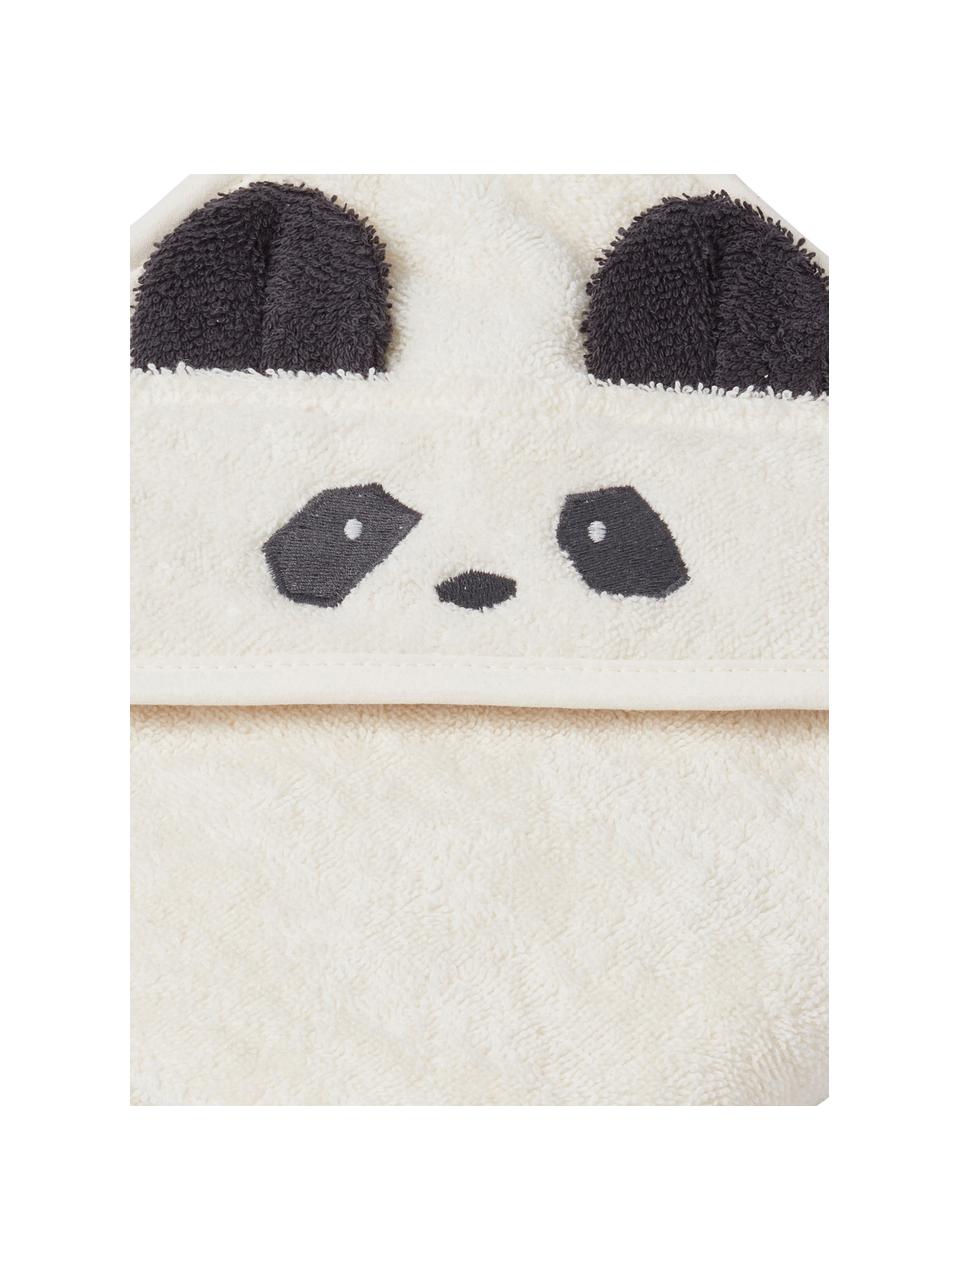 Ręcznik dziecięcy Augusta Panda, 100% bawełna organiczna (frotte) z certyfikatem GOTS, Biały, czarny, S 70 x D 70 cm